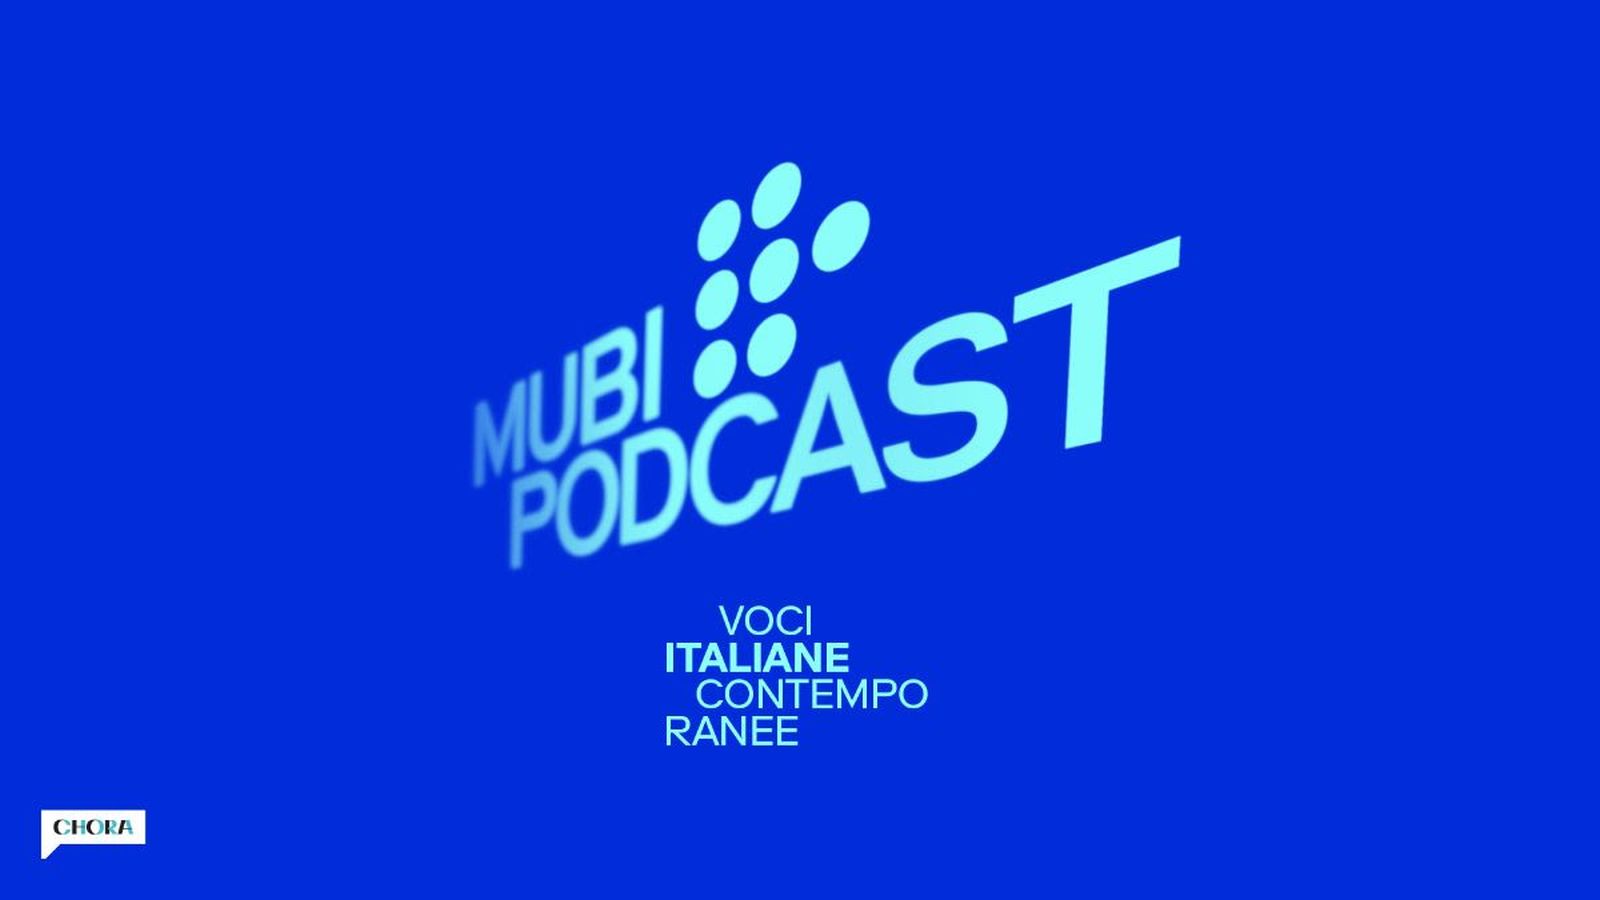 MUBI e Chora Media annunciano il podcast MUBI Podcast: voci italiane contemporanee